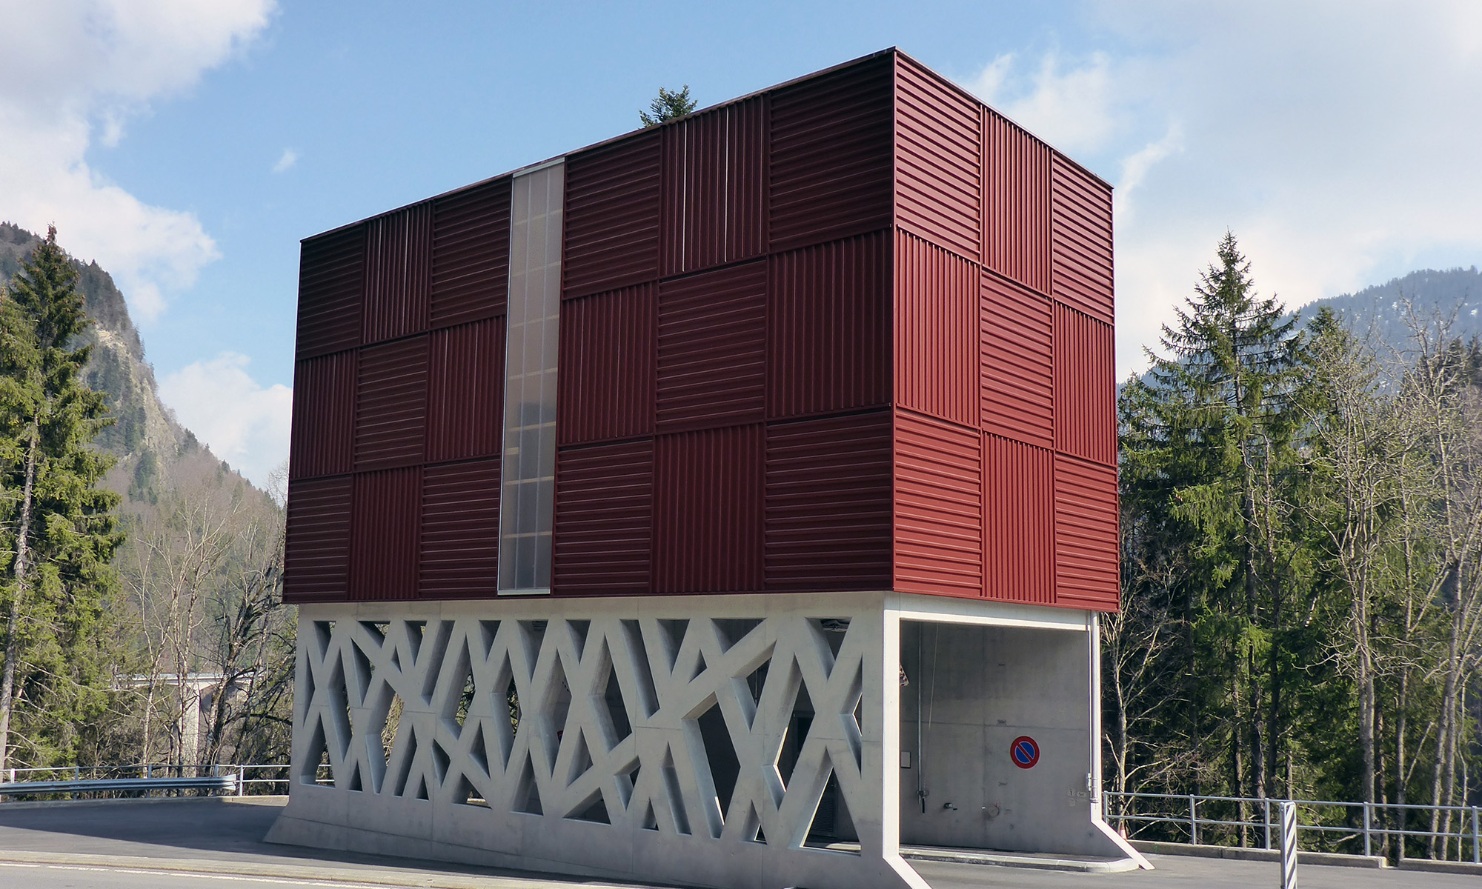 Silo modulaire architectural rouge avec support en béton filigrane, traversé par une route